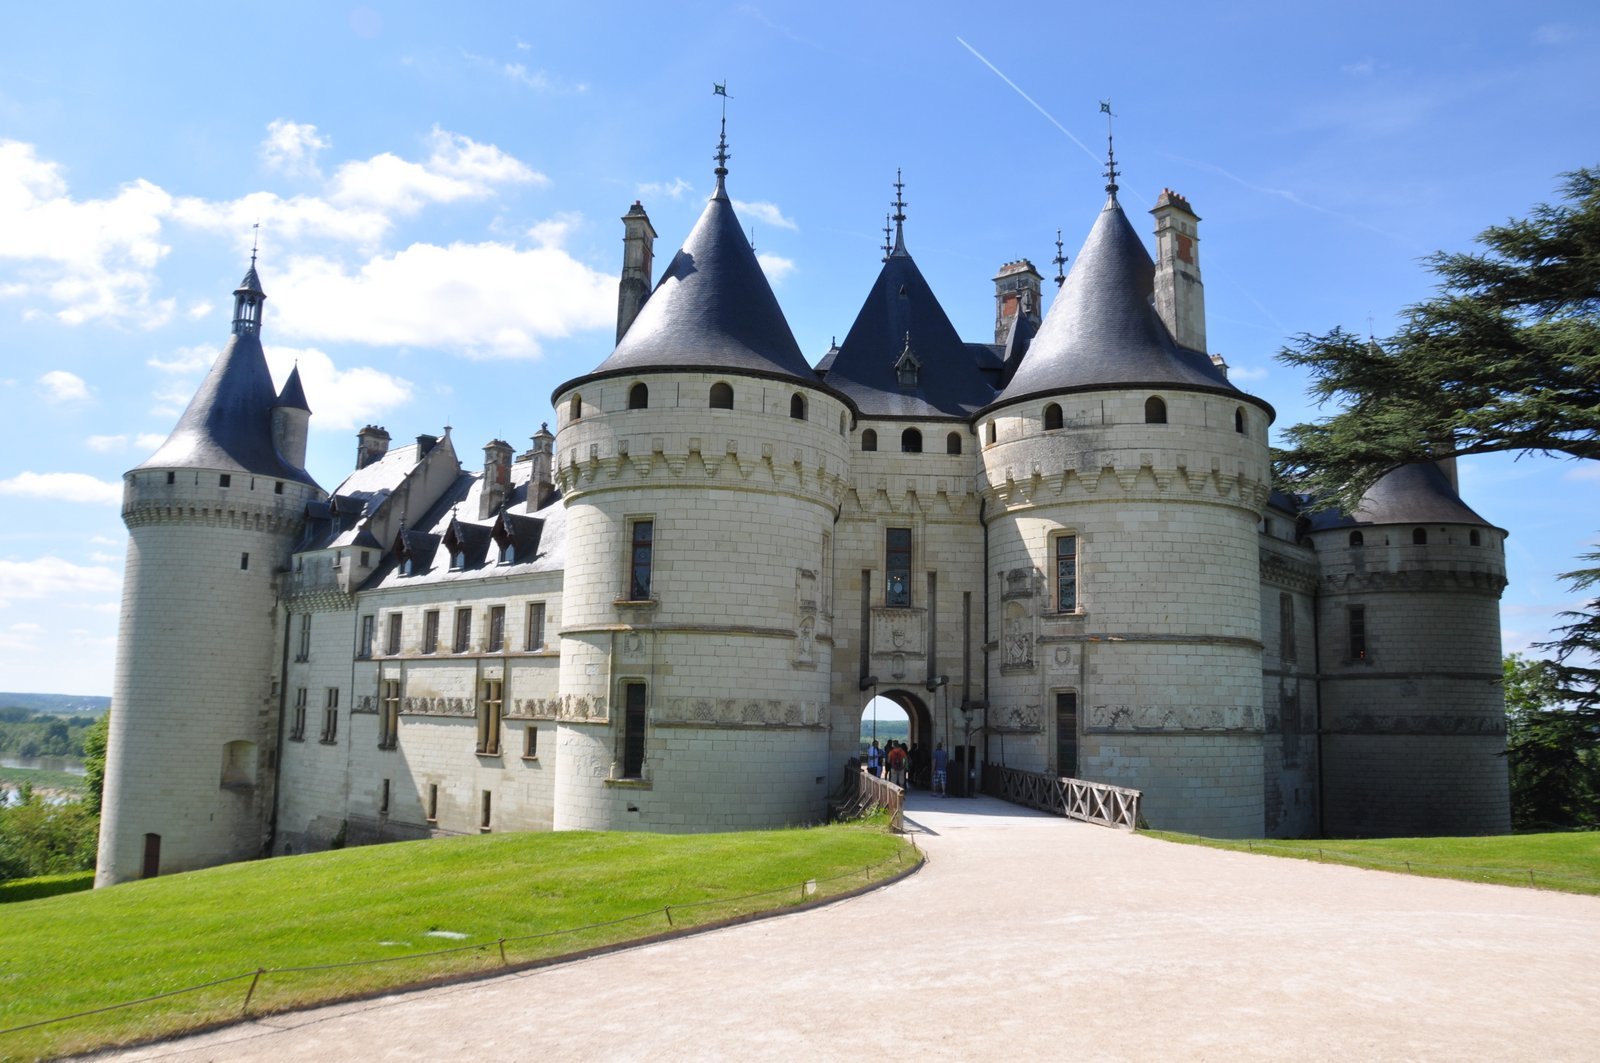 El castillo de Chaumont-sur-Loire